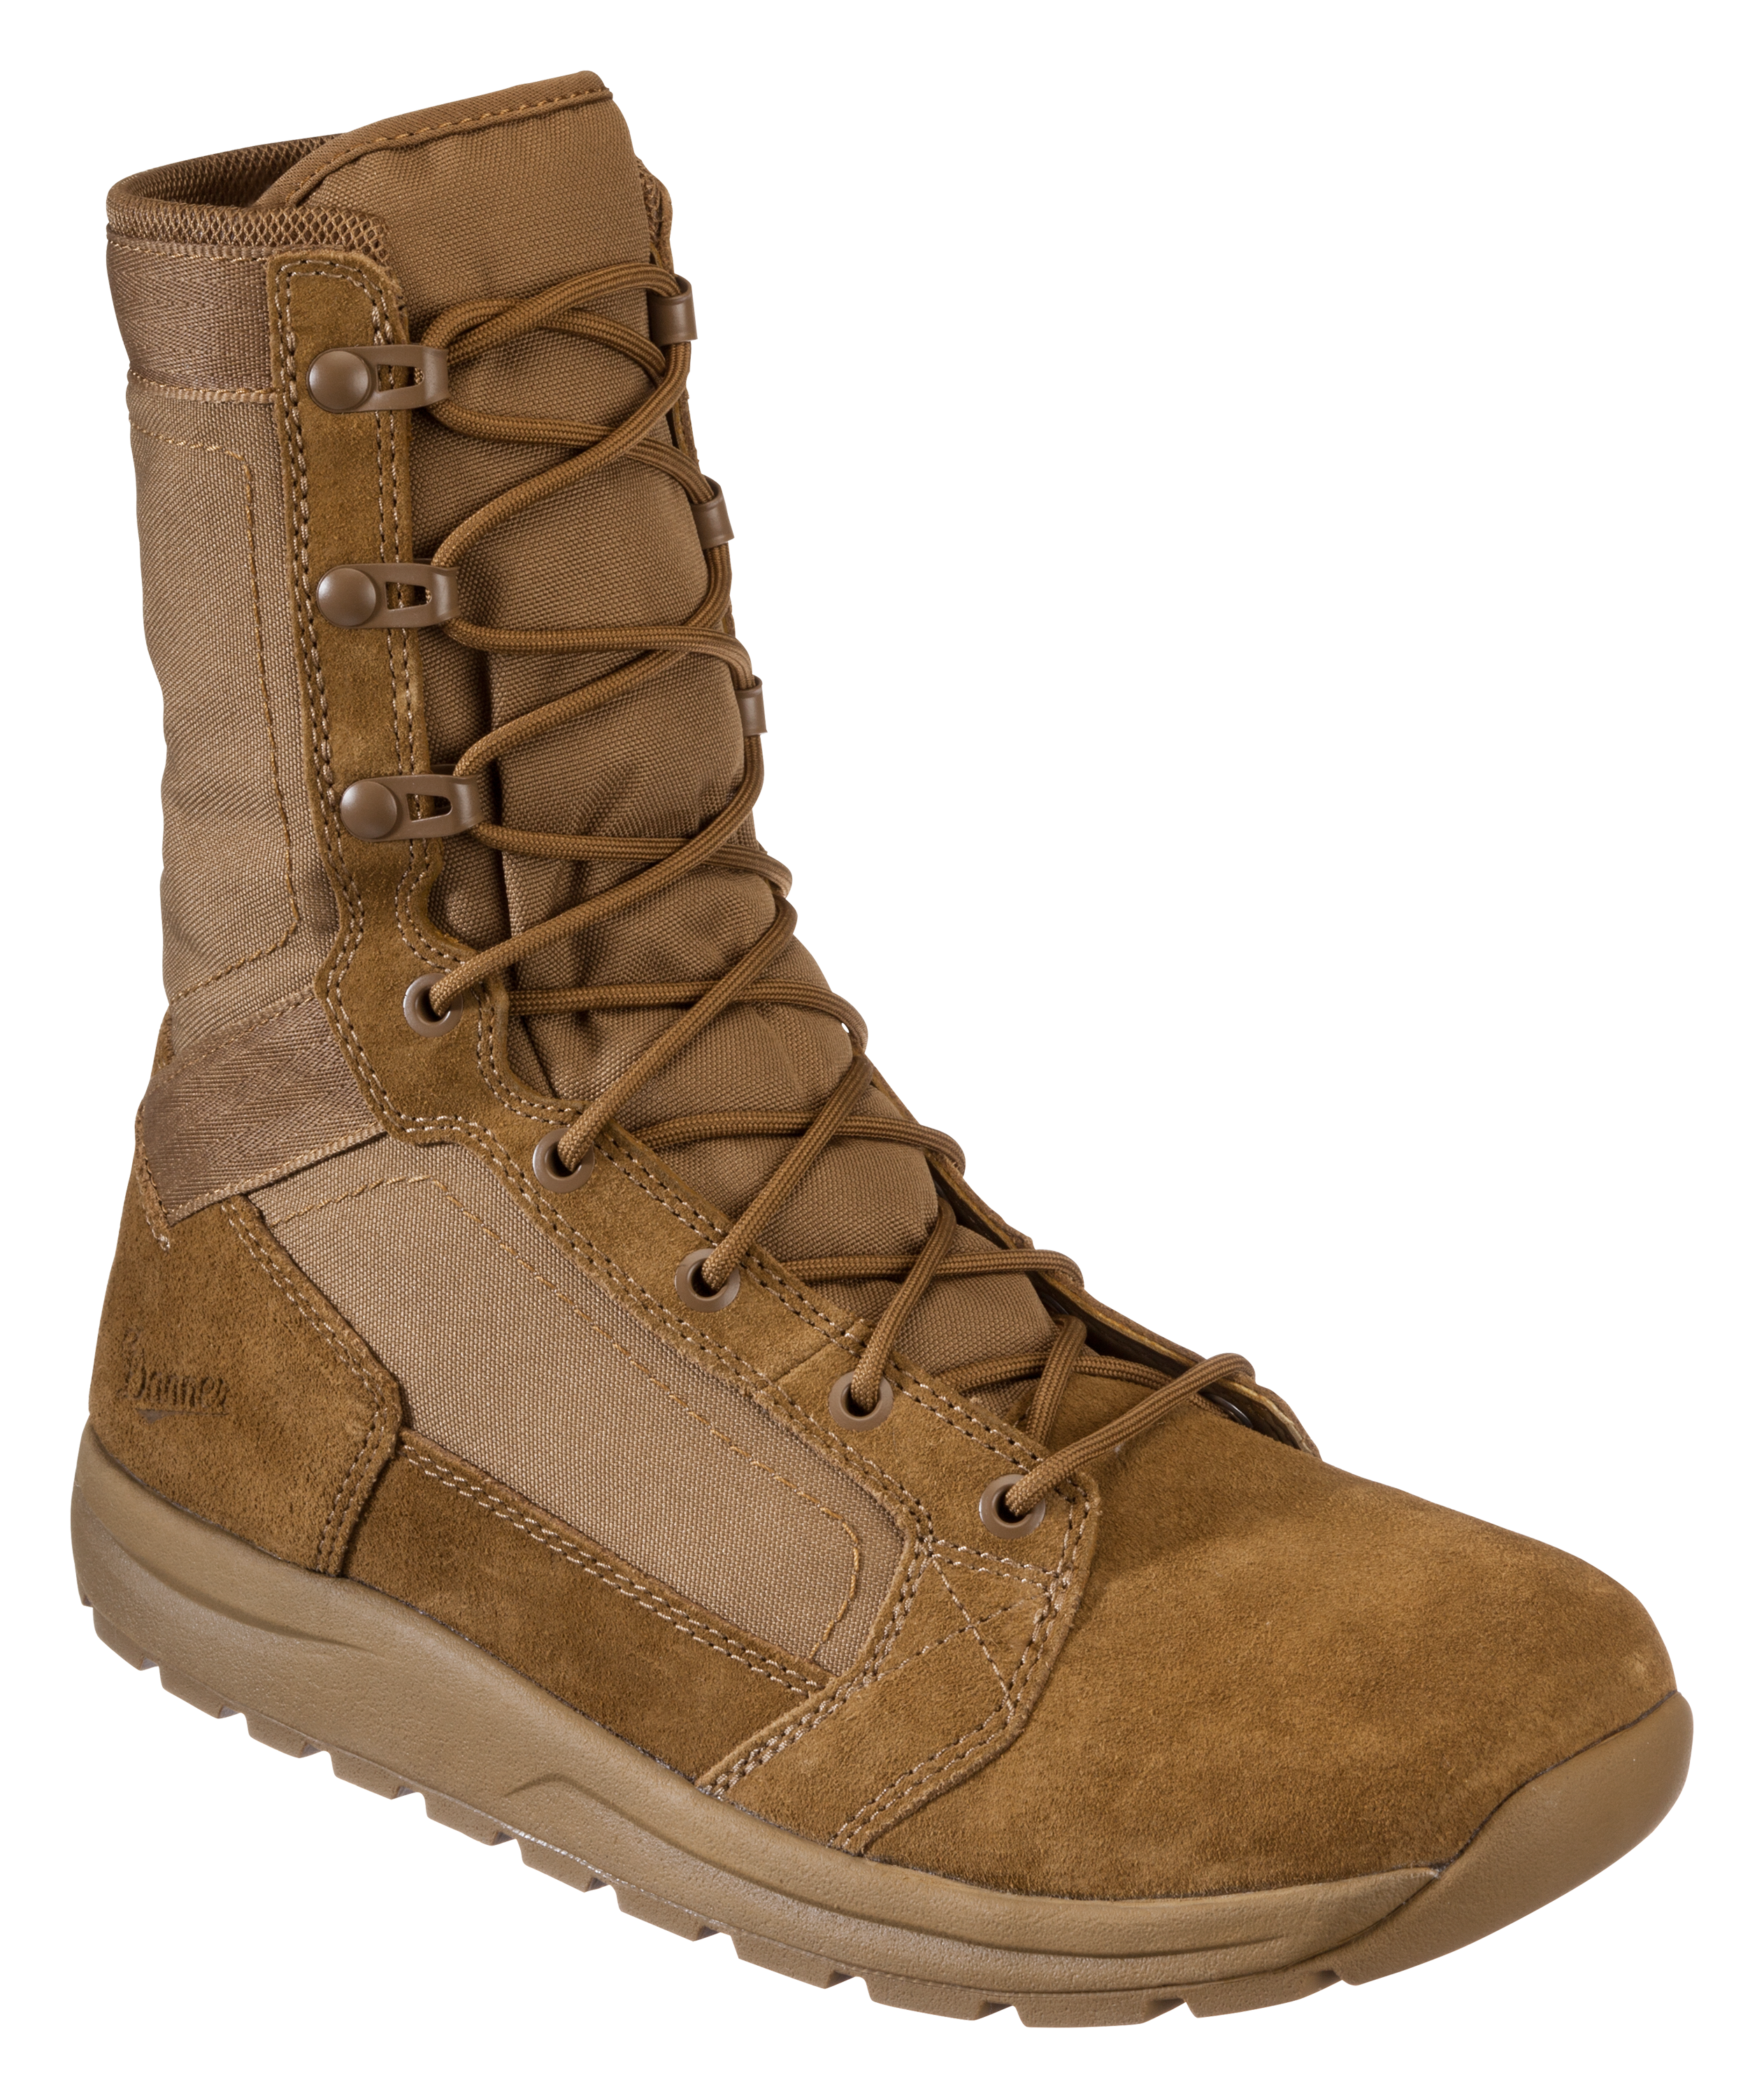 Danner Tachyon Tactical Boots for Men - Coyote - 15M